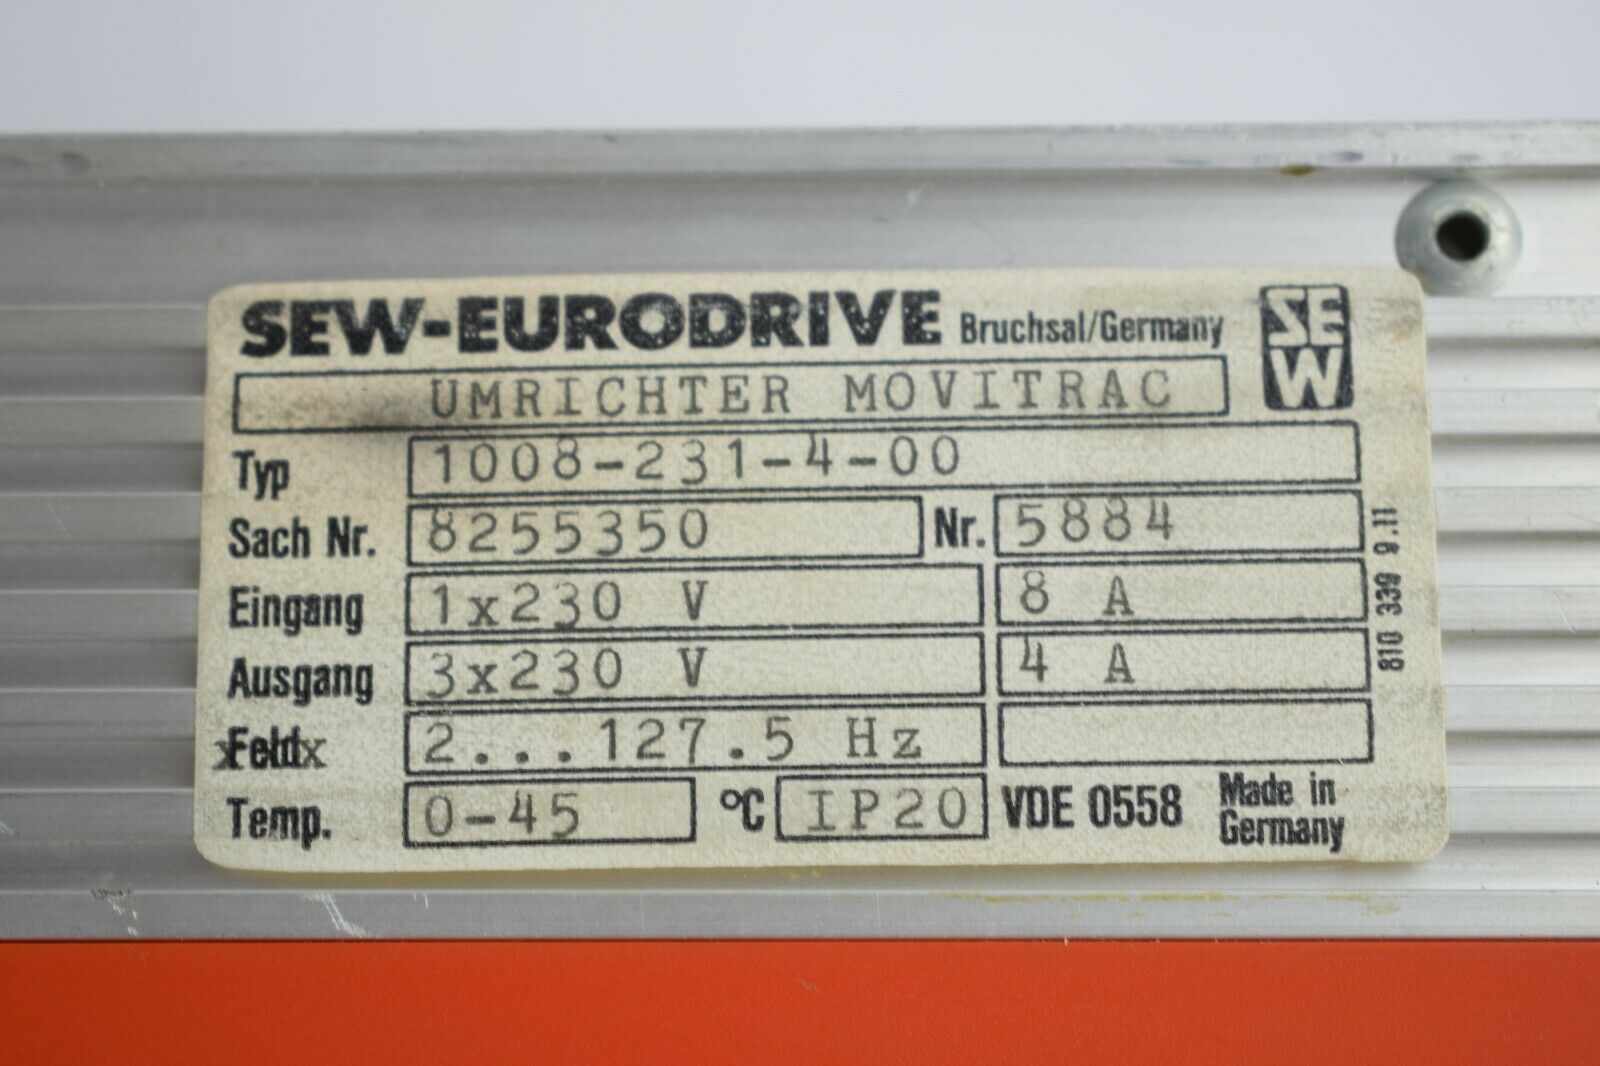 SEW Eurodrive Movitrac 1008-231-4-00